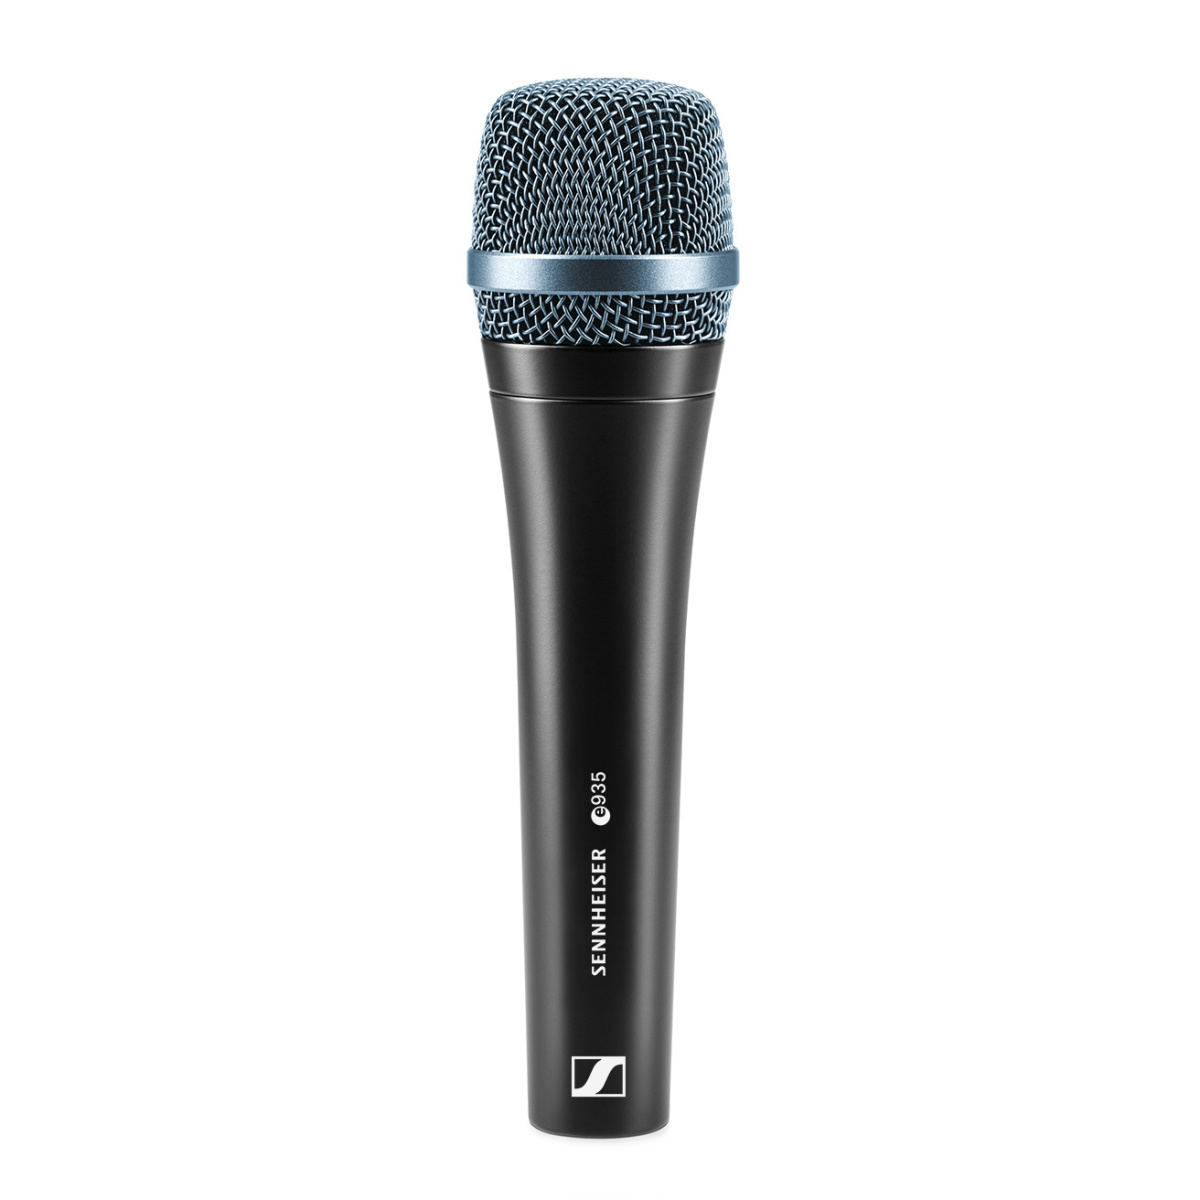 SENNHEISER E 935 - динамический вокальный микрофон, кардиоида, 40 - 18000 Гц, 350 Ом купить в prostore.me